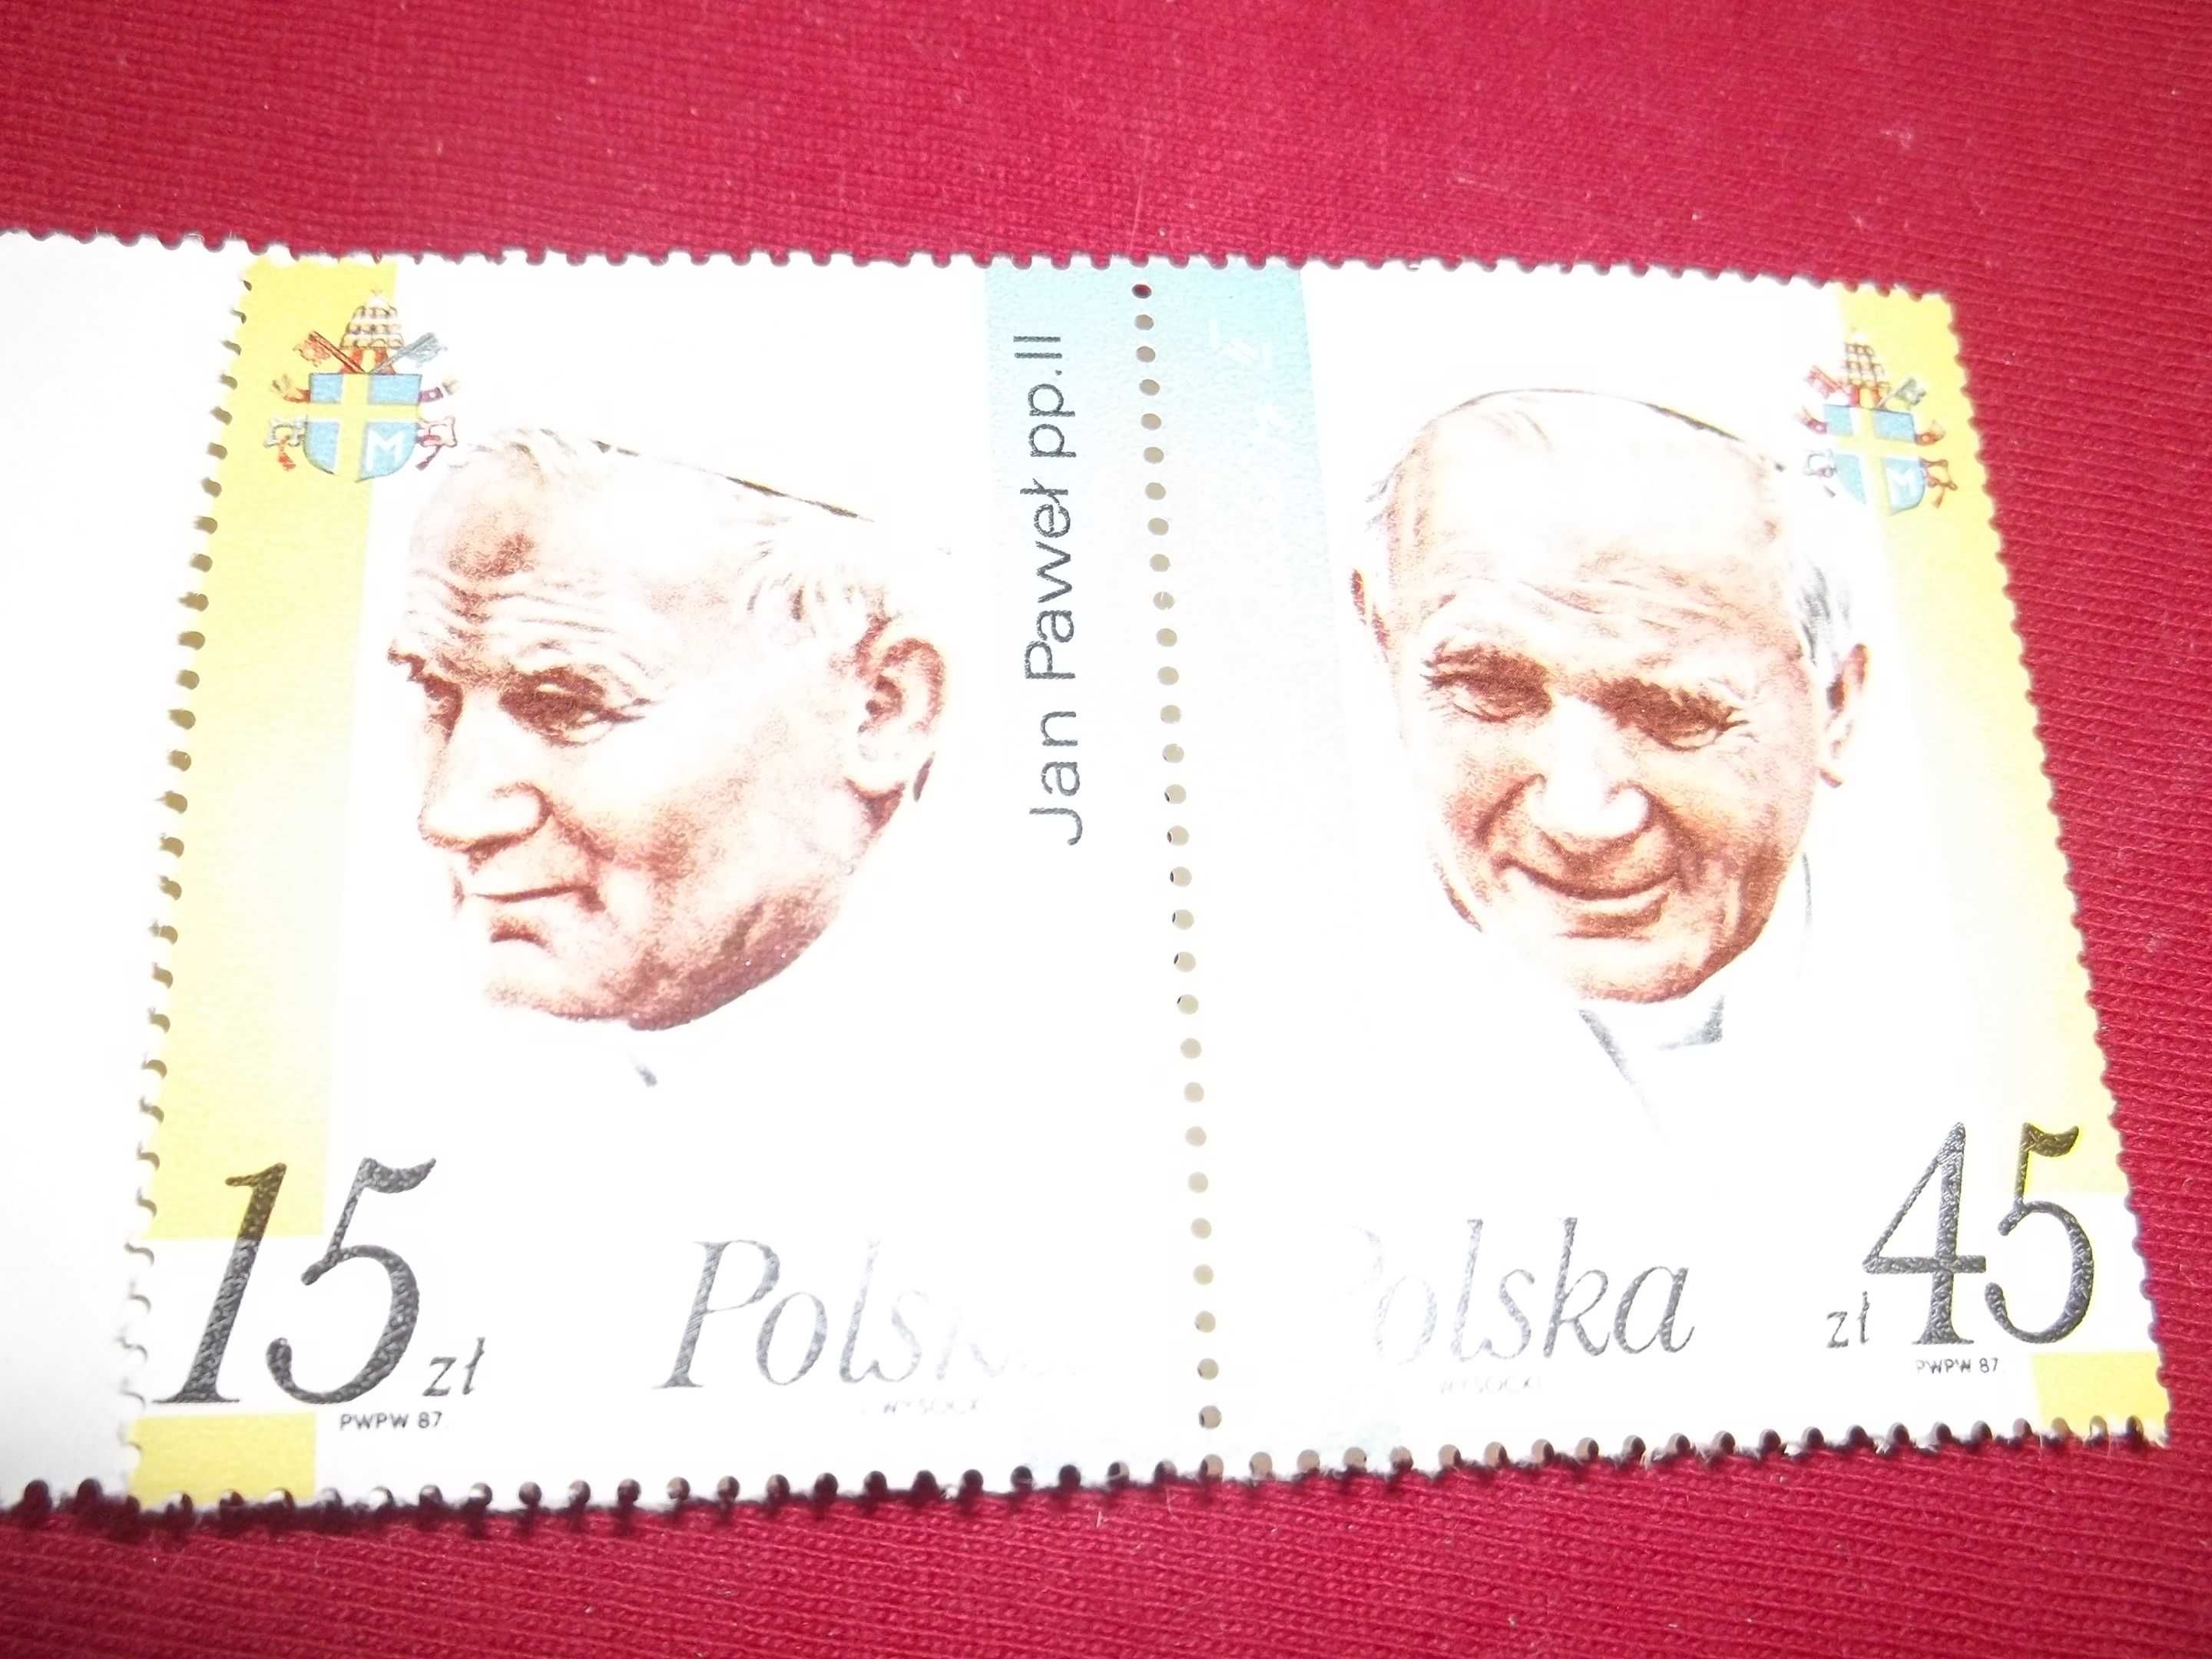 Znaczek pocztowy z papieżem Janem Pawłem II Zestaw